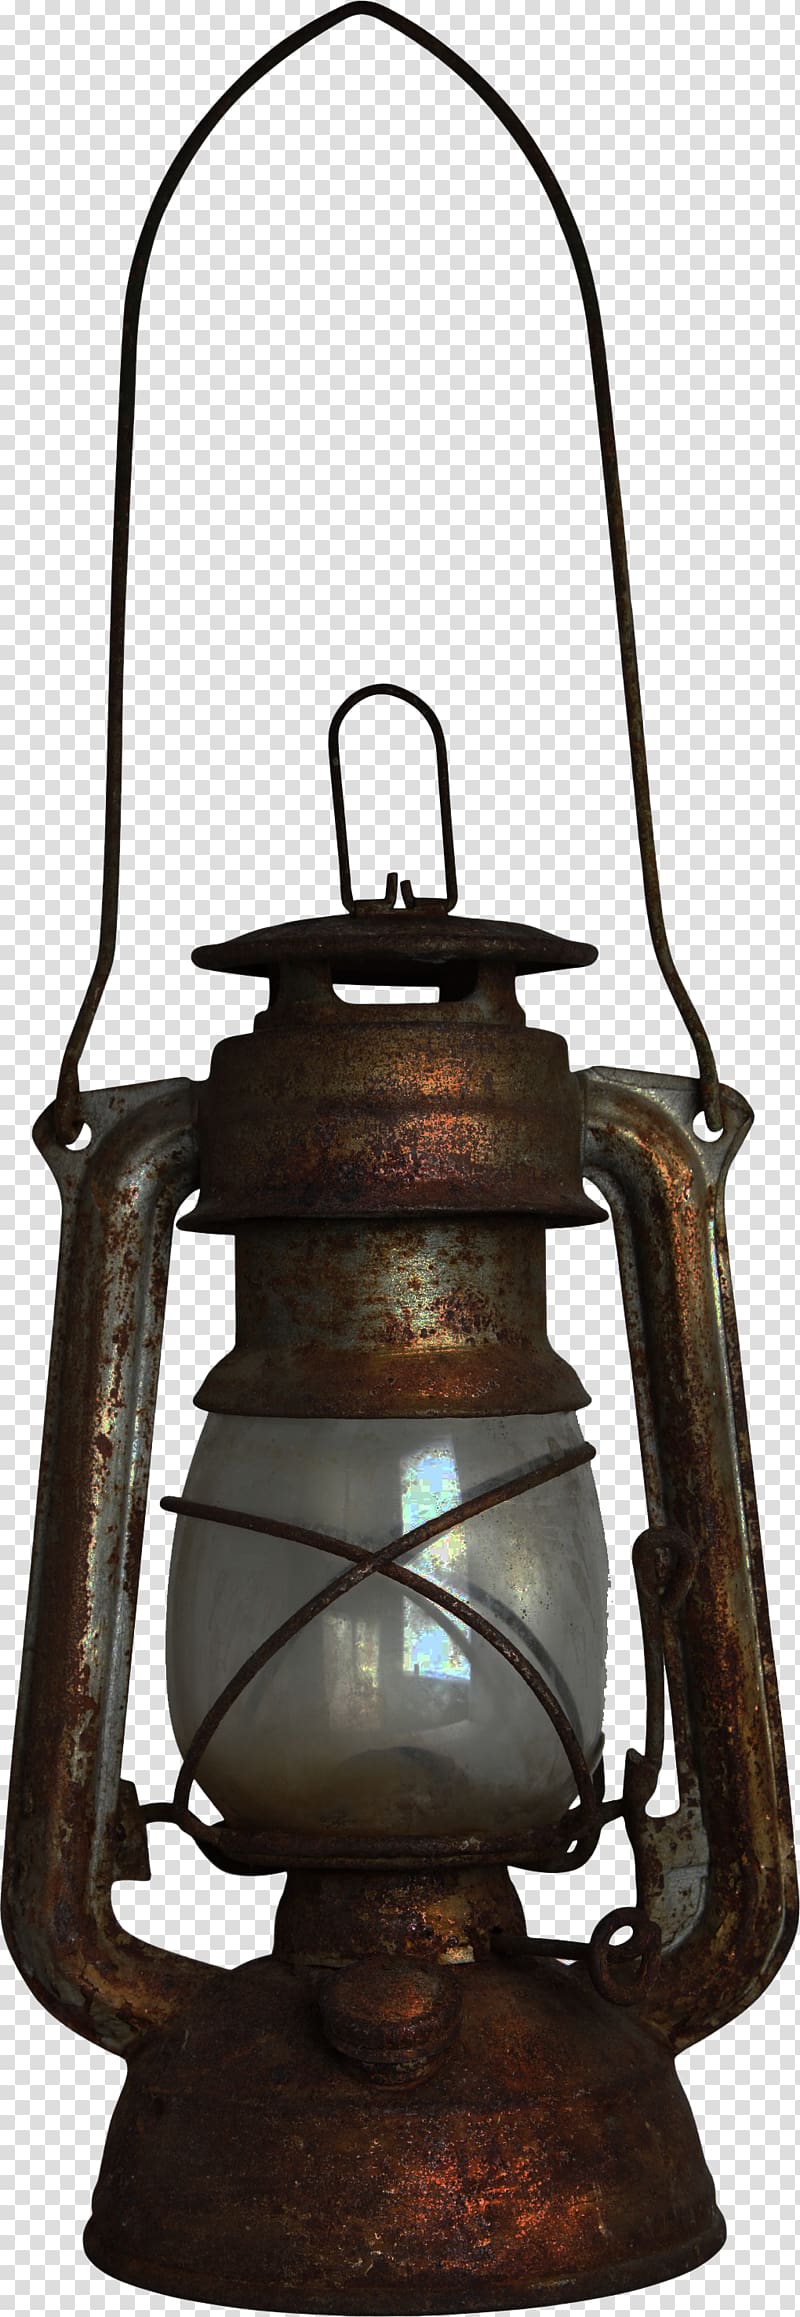 brown tubular lantern illustration, Light Oil lamp Kerosene lamp Lantern, Oil lamps transparent background PNG clipart